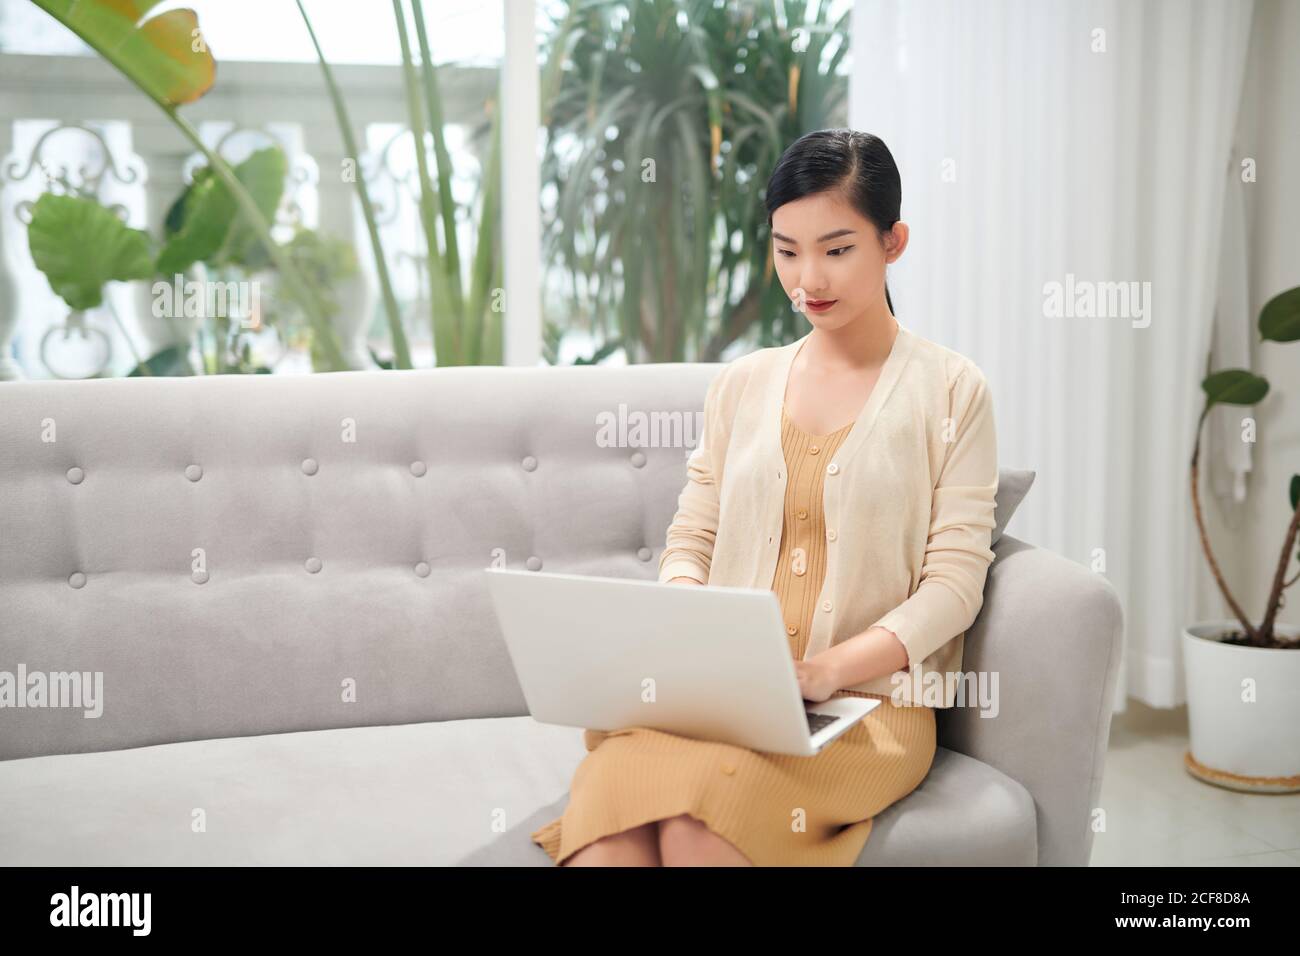 Une jeune femme attirante utilise un ordinateur portable pour travailler à domicile. Elle est dans une tenue décontractée assis sur le canapé dans le salon confortable Banque D'Images